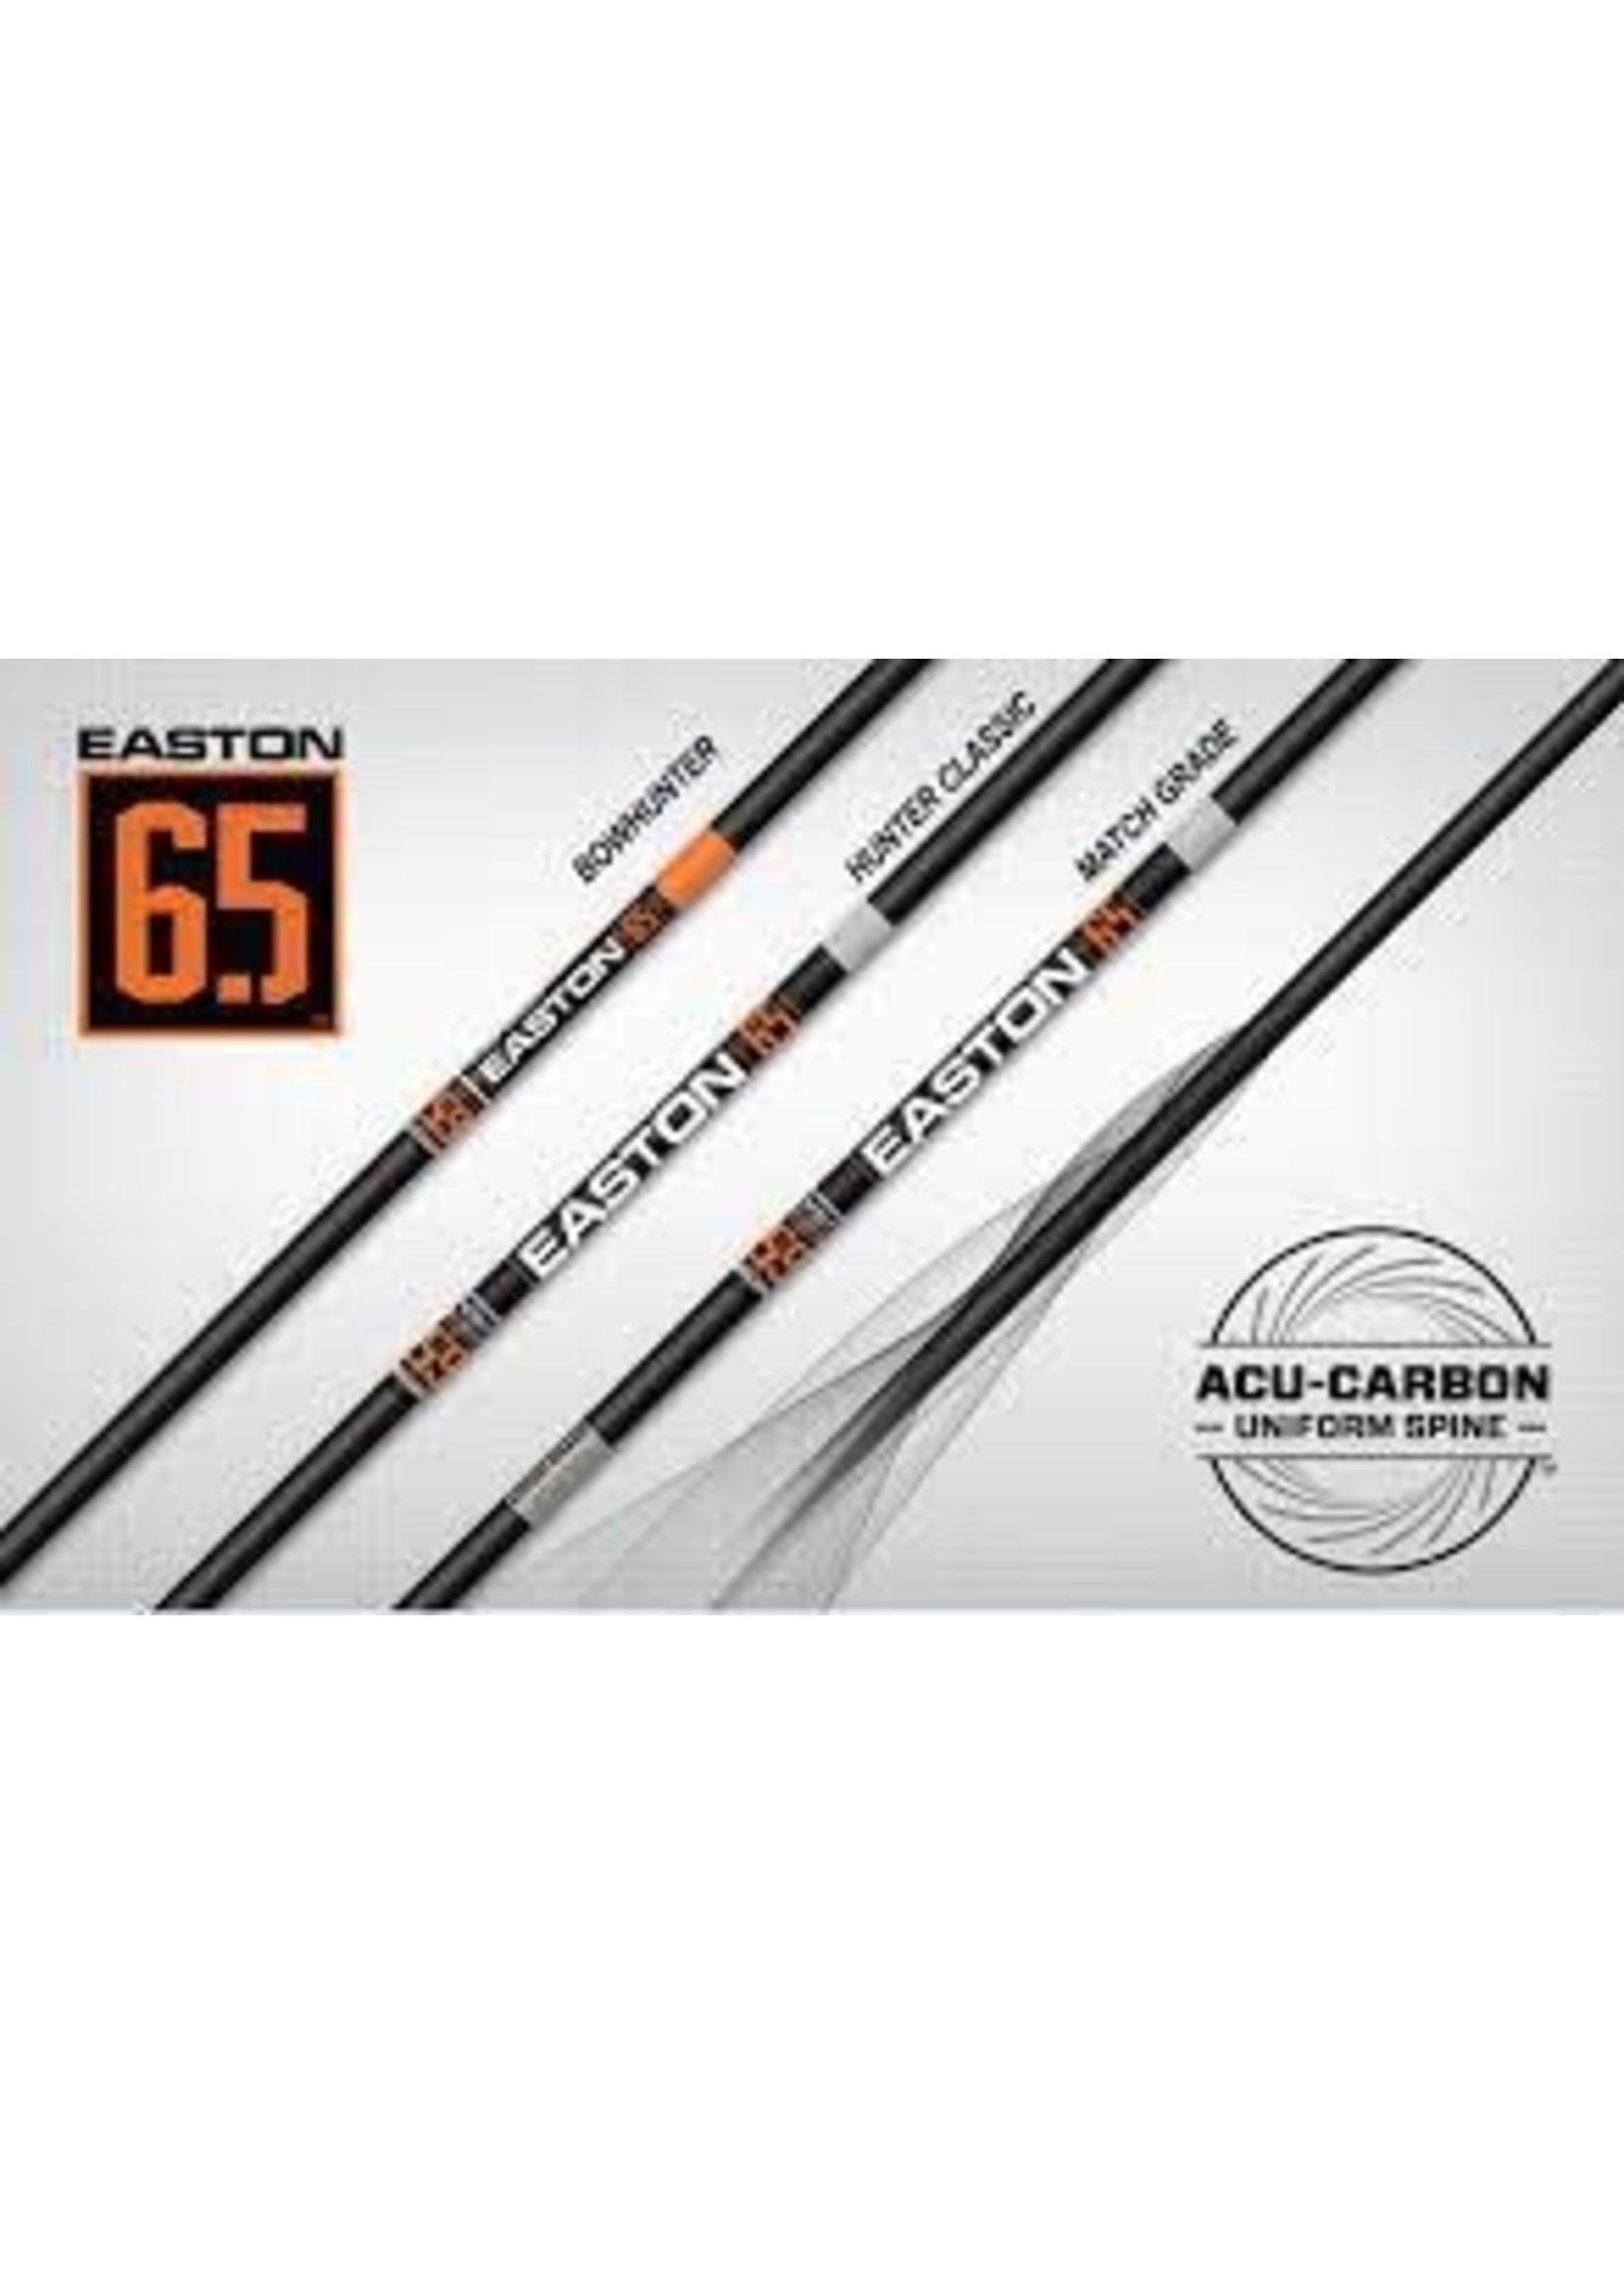 Easton 65 Mm Classic Arrow Shaft Dozen Precision Archerie